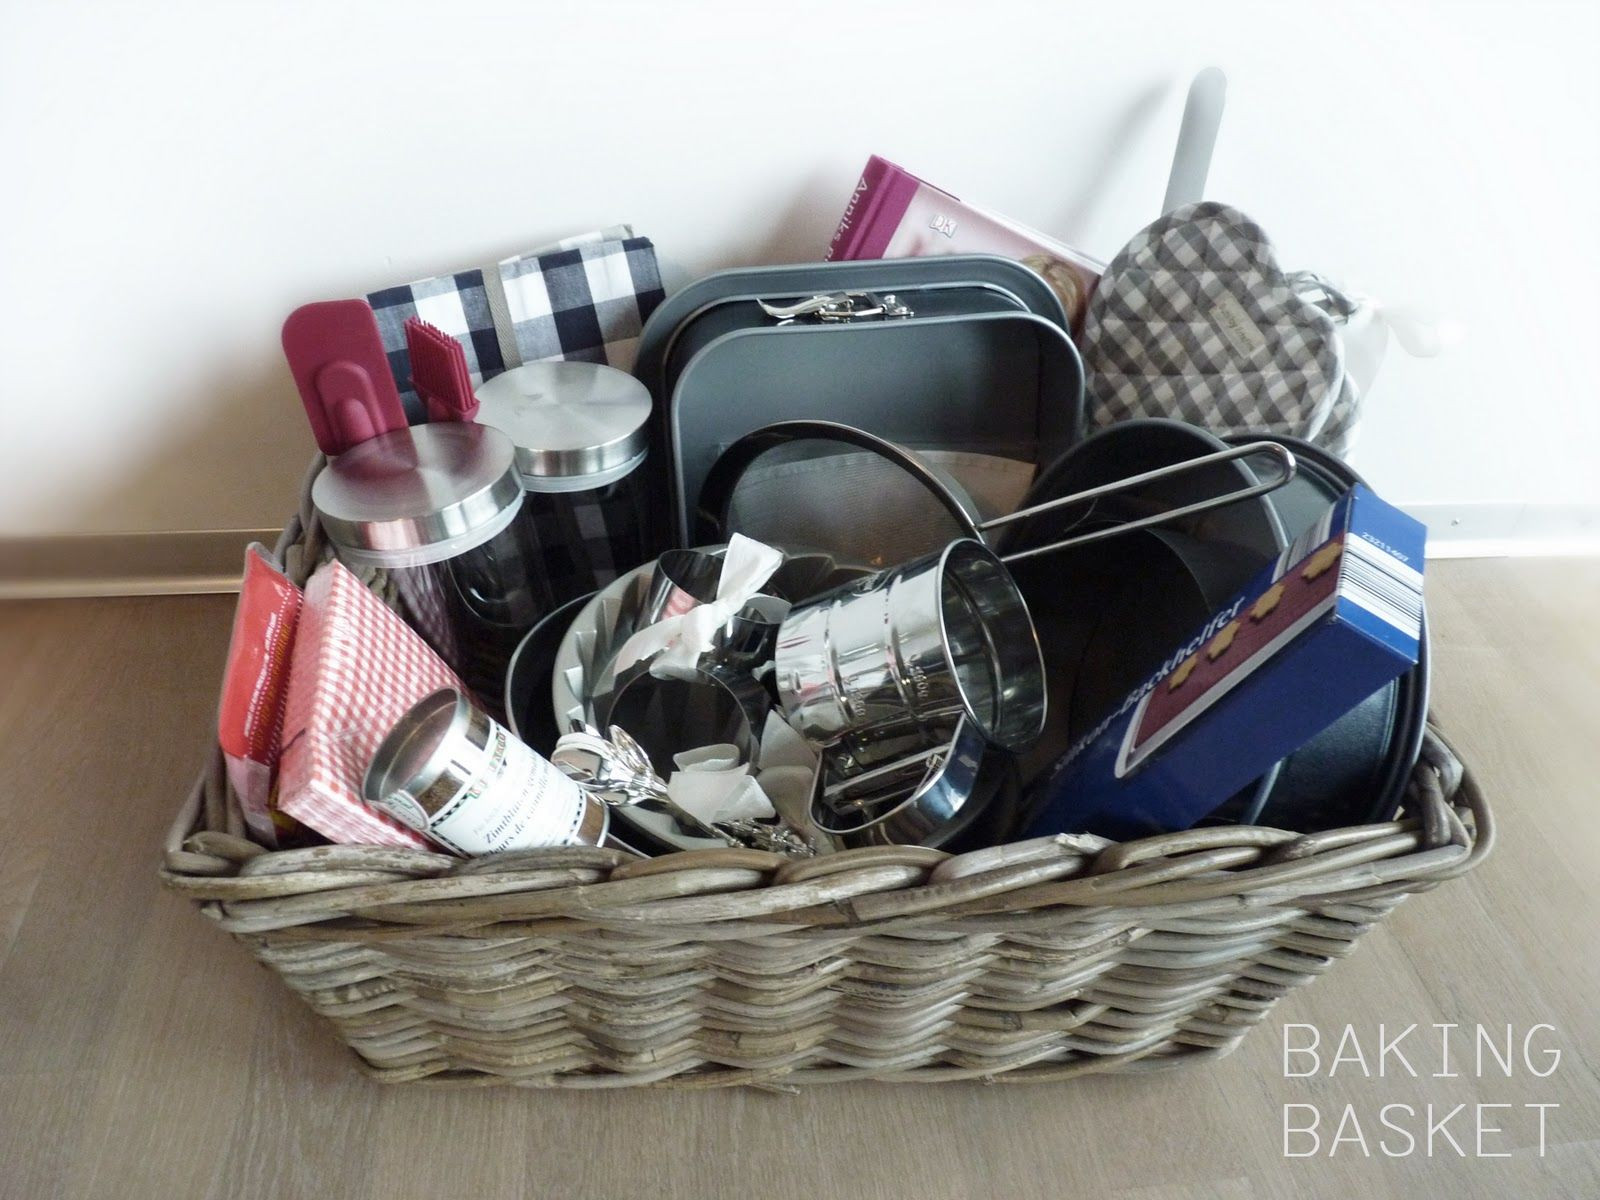 Baking Gift Baskets Ideas
 baking t basket ideas